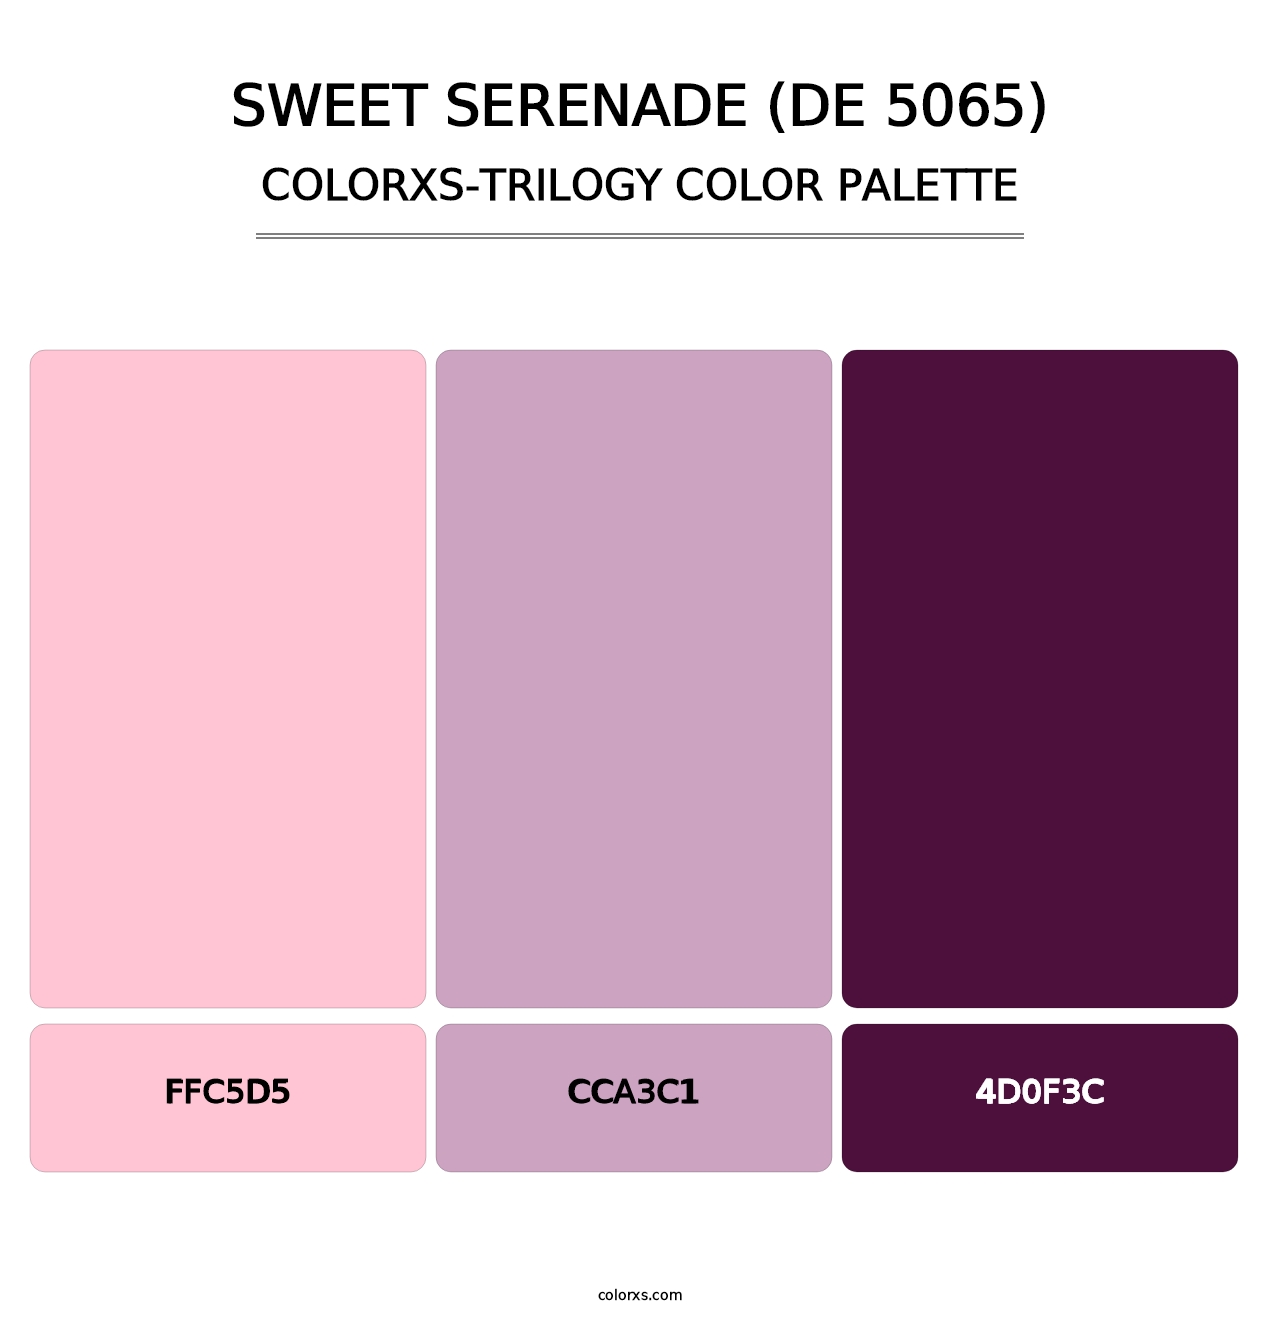 Sweet Serenade (DE 5065) - Colorxs Trilogy Palette